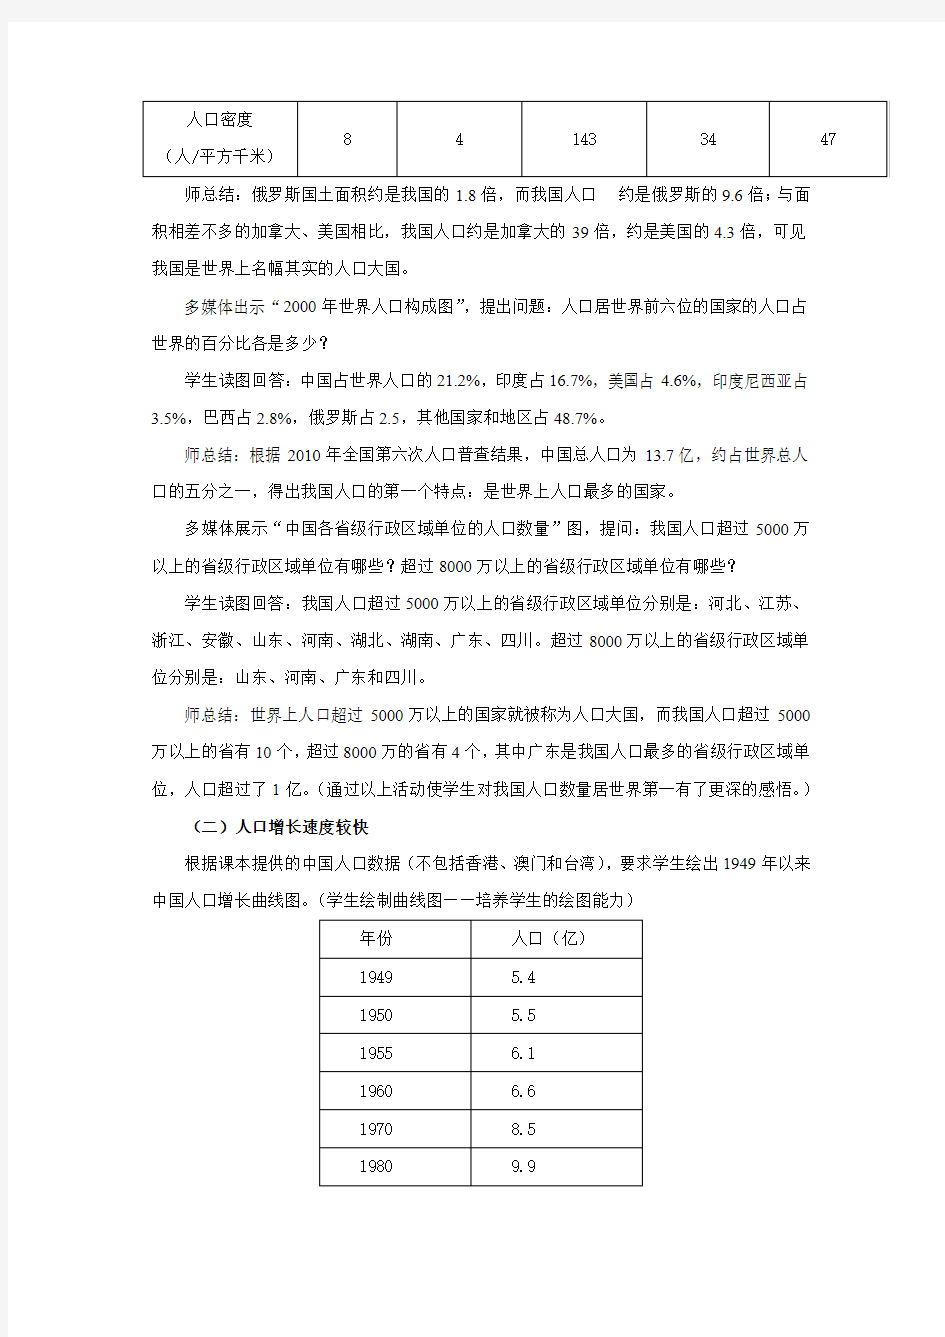 初中地理_中国的人口教学设计学情分析教材分析课后反思